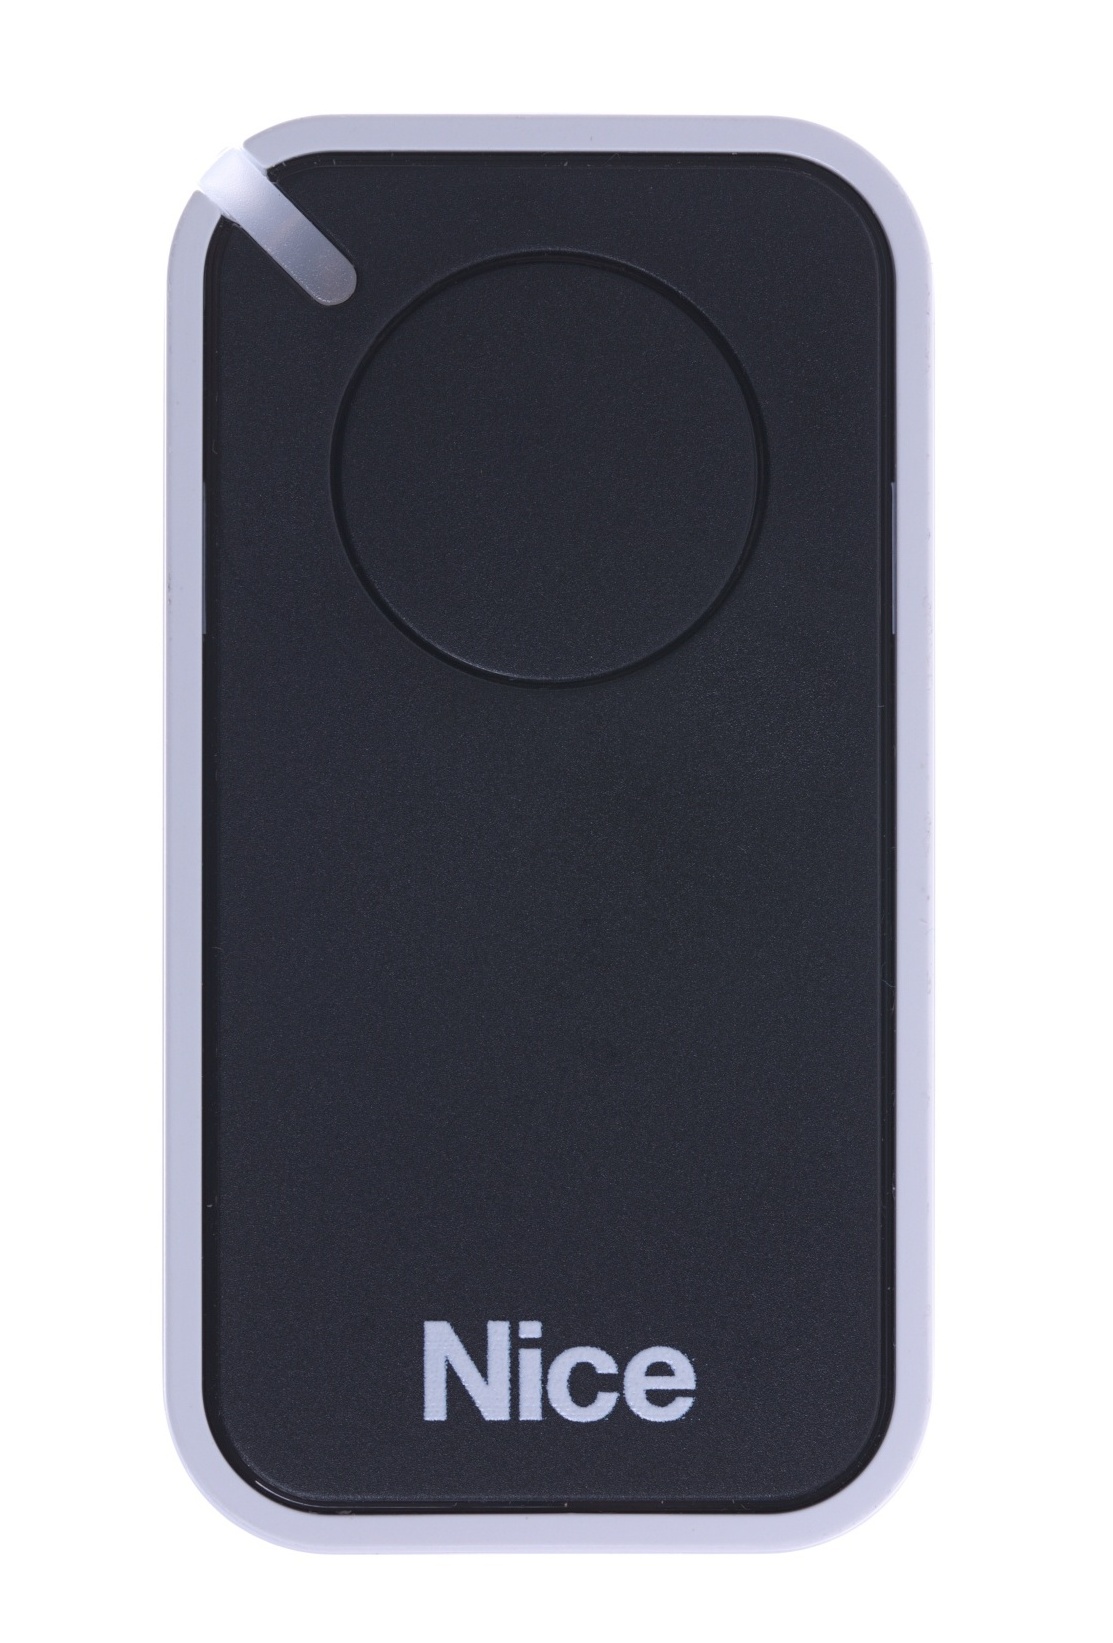 Ovladač na vrata Nice INTI1, 1-kanálový, černý, Nice ERA INTI